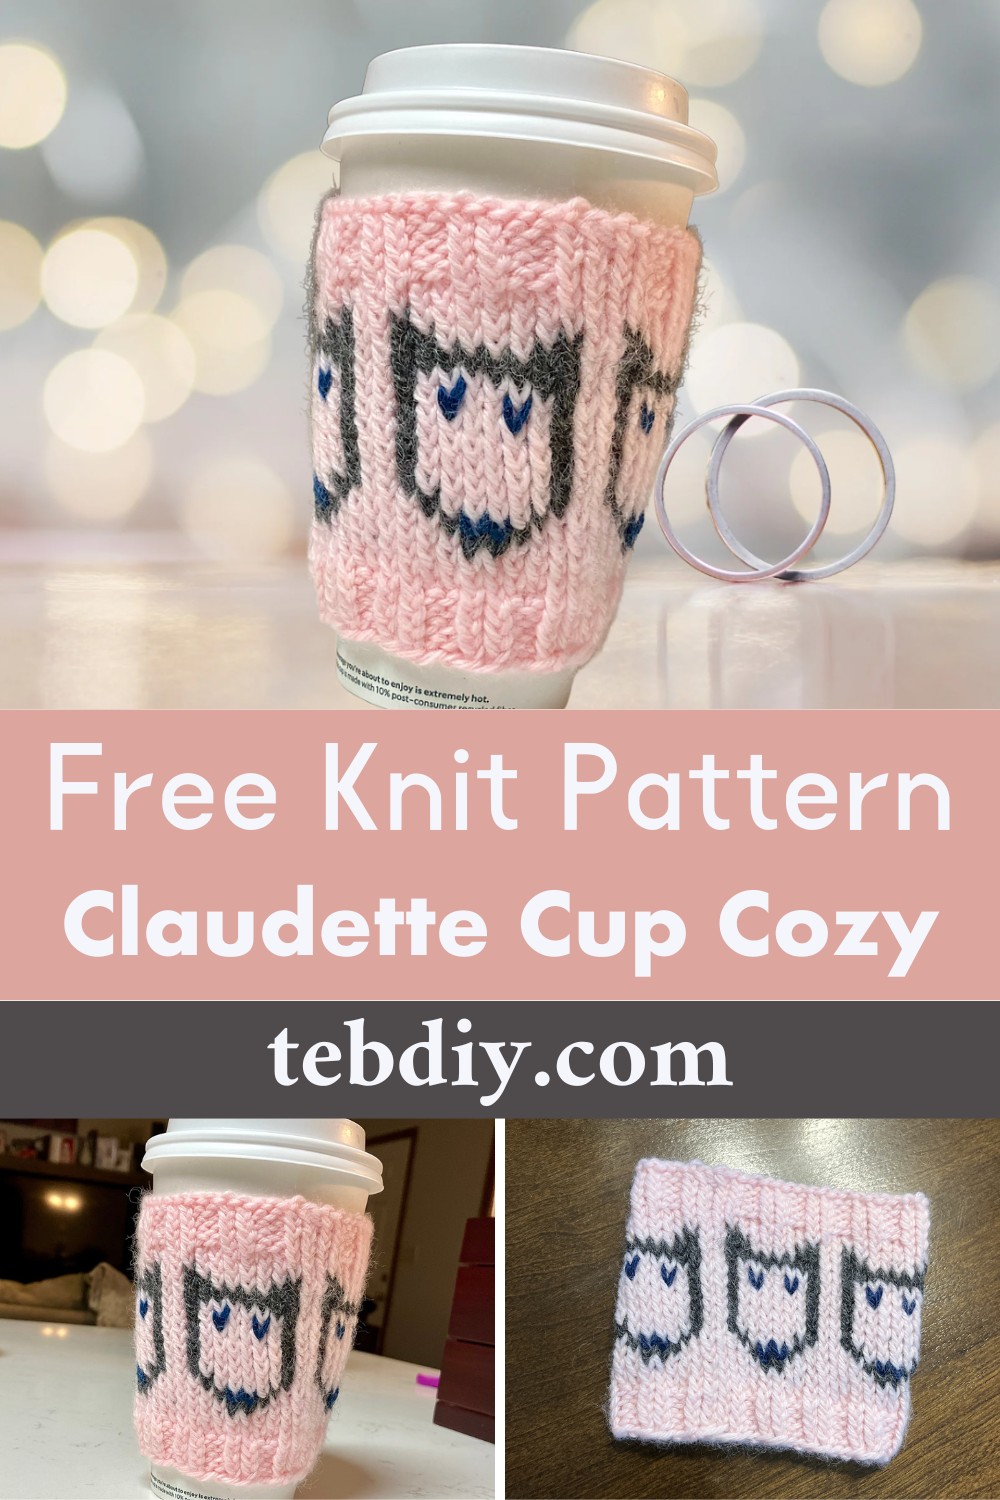 Claudette Cup Cozy